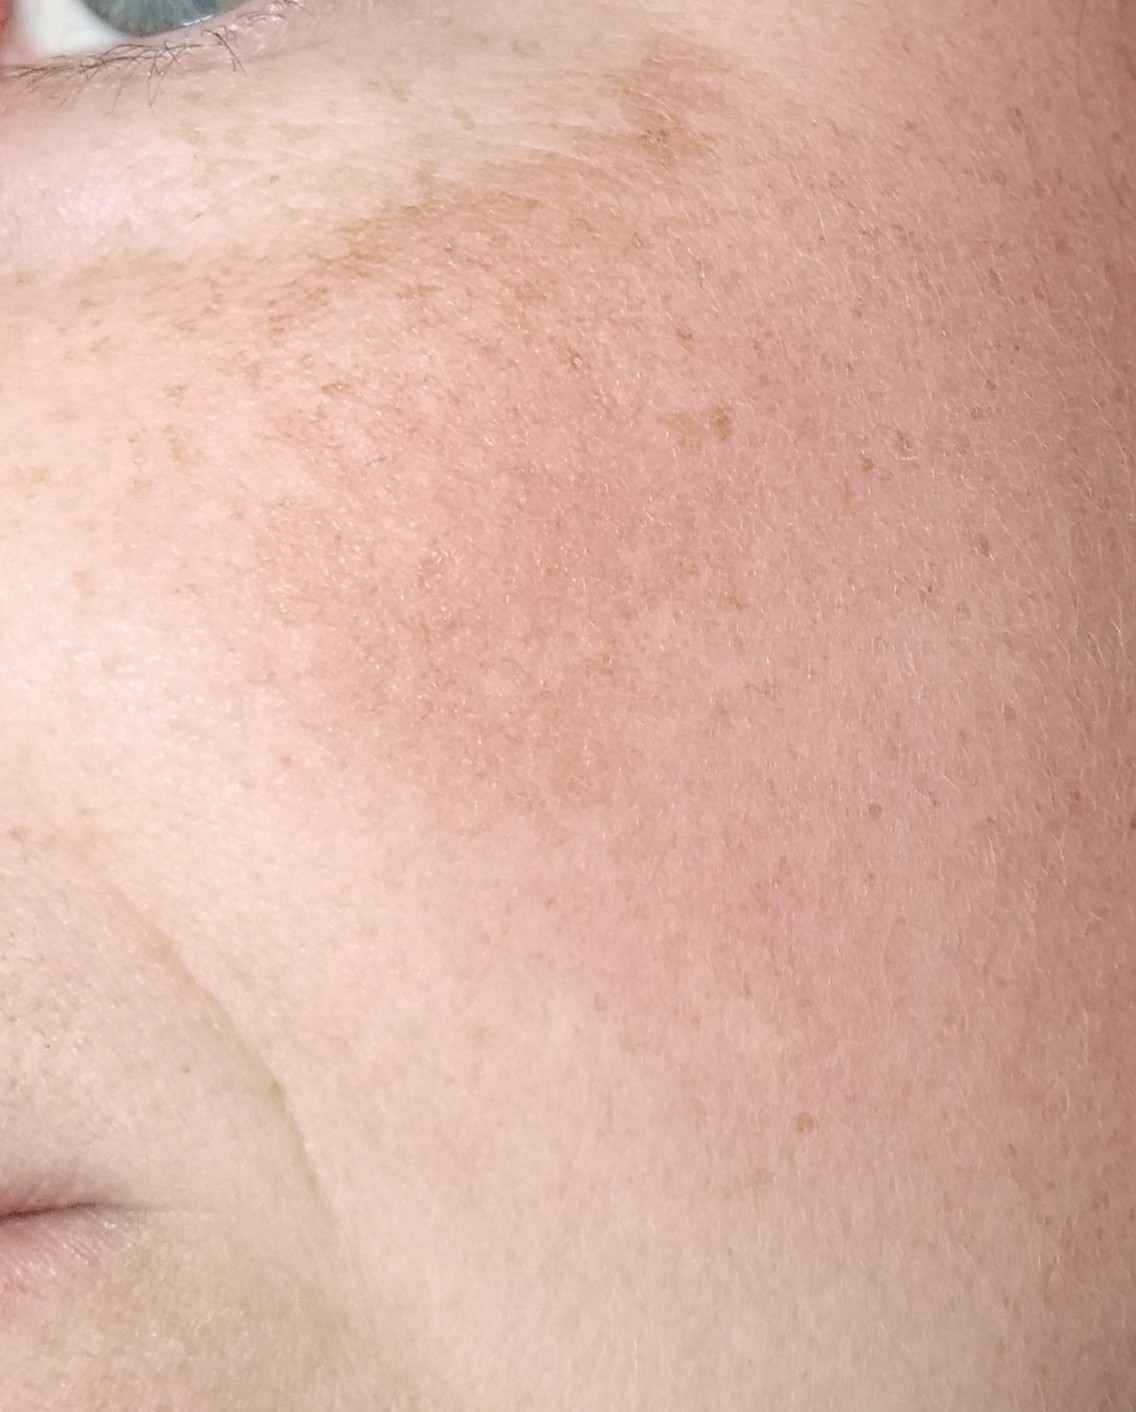 Коричневые пятна на лице - Вопрос дерматологу - 03 Онлайн